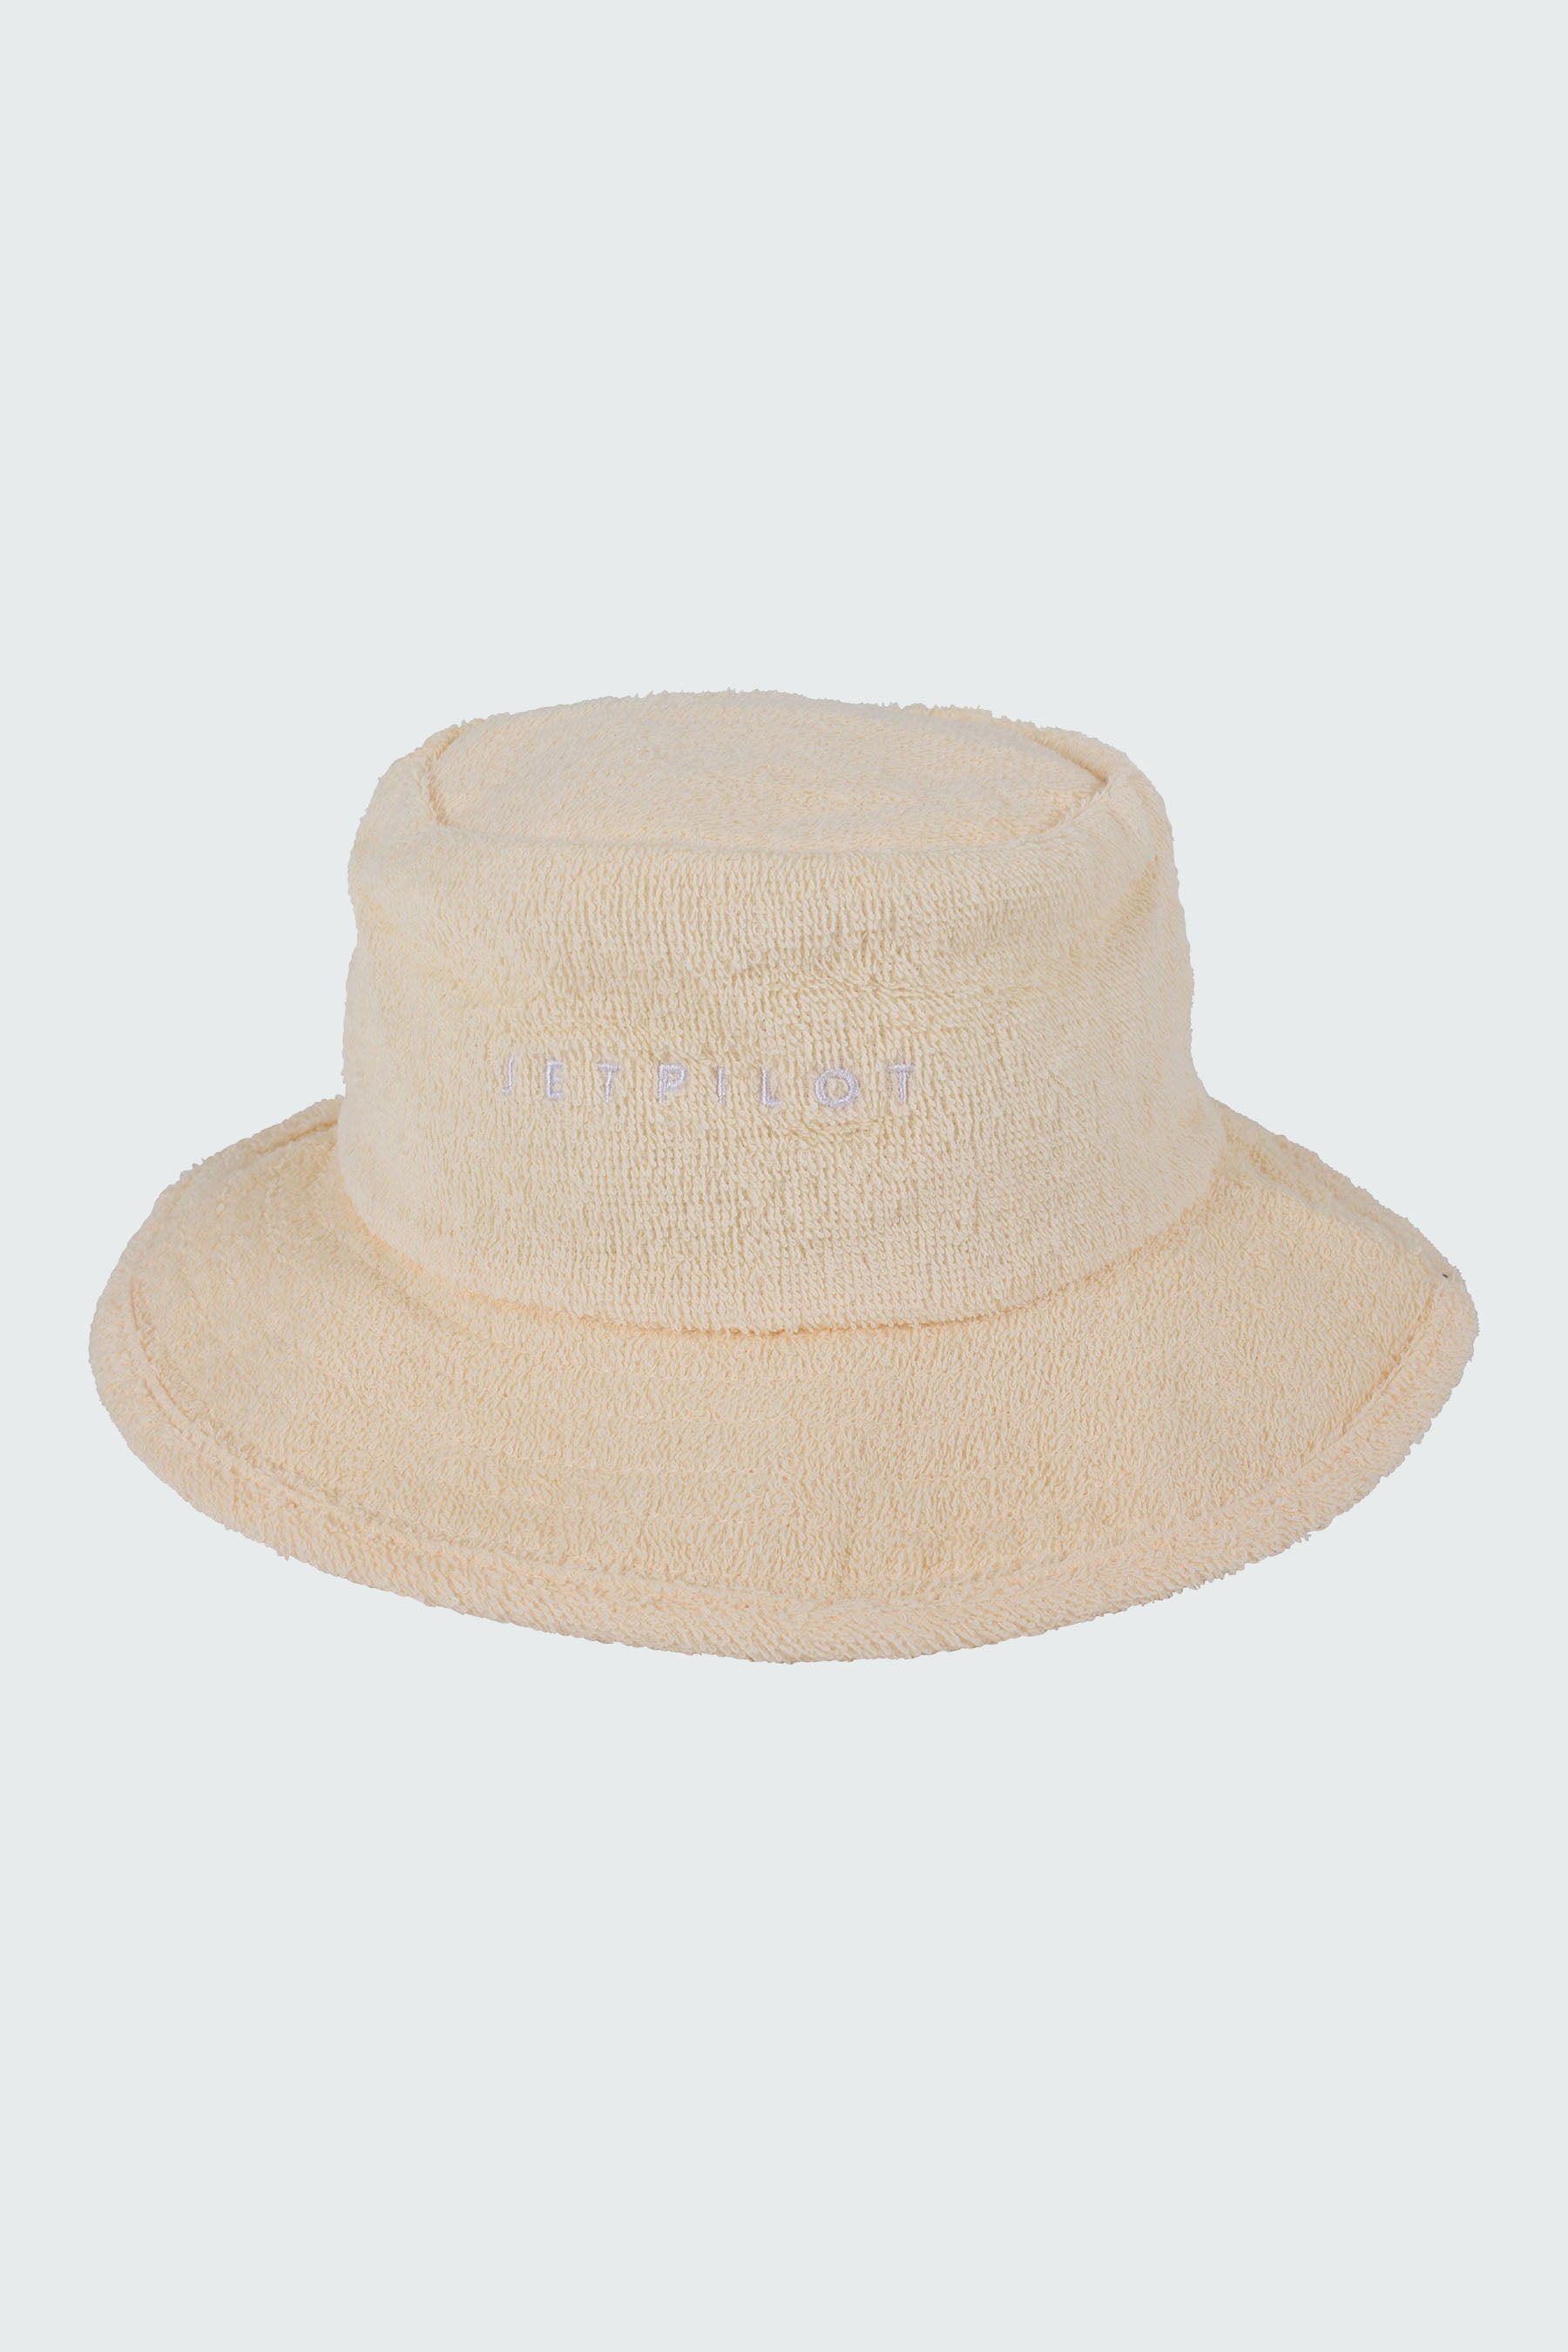 Jetpilot Terry Ladies Bucket Hat - Tan